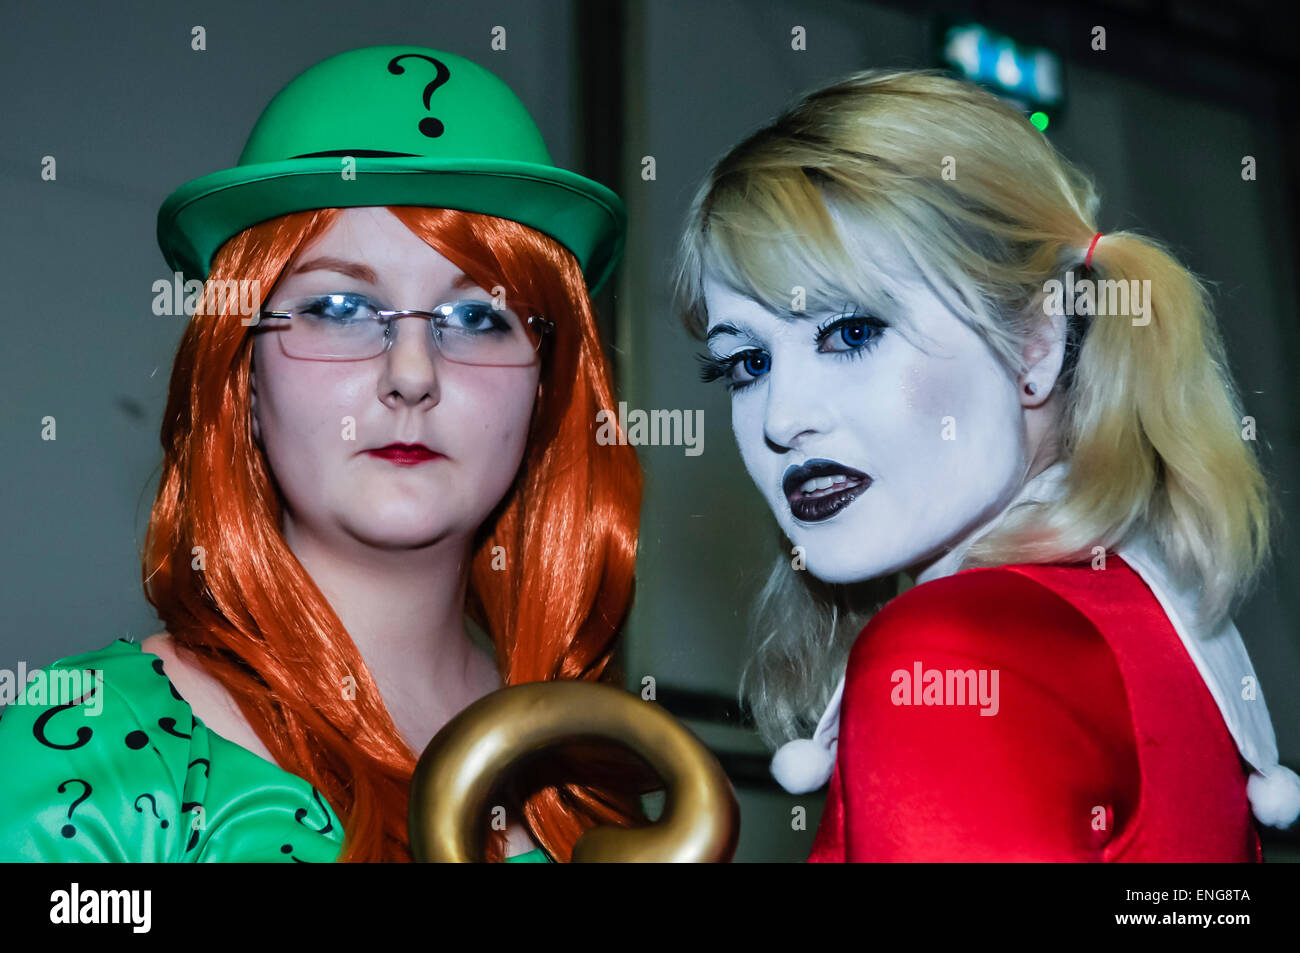 Deux cosplayeurs habillés comme le Joker et Harley Quinn de Batman lors d'une conférence Comicon Banque D'Images